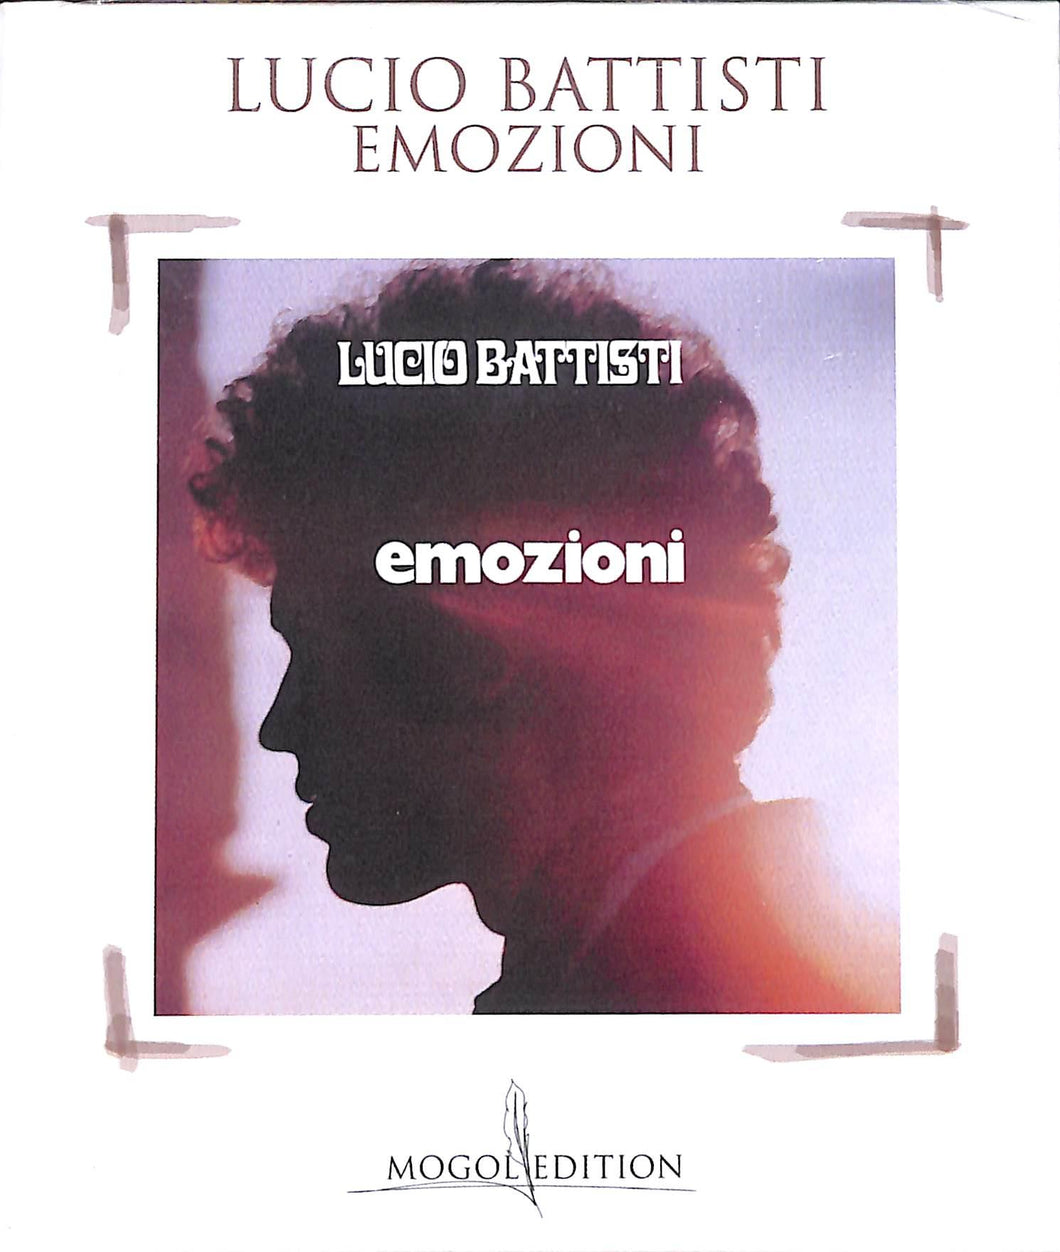 Cd - Lucio Battisti Emozioni  Mogol edition Sigillato